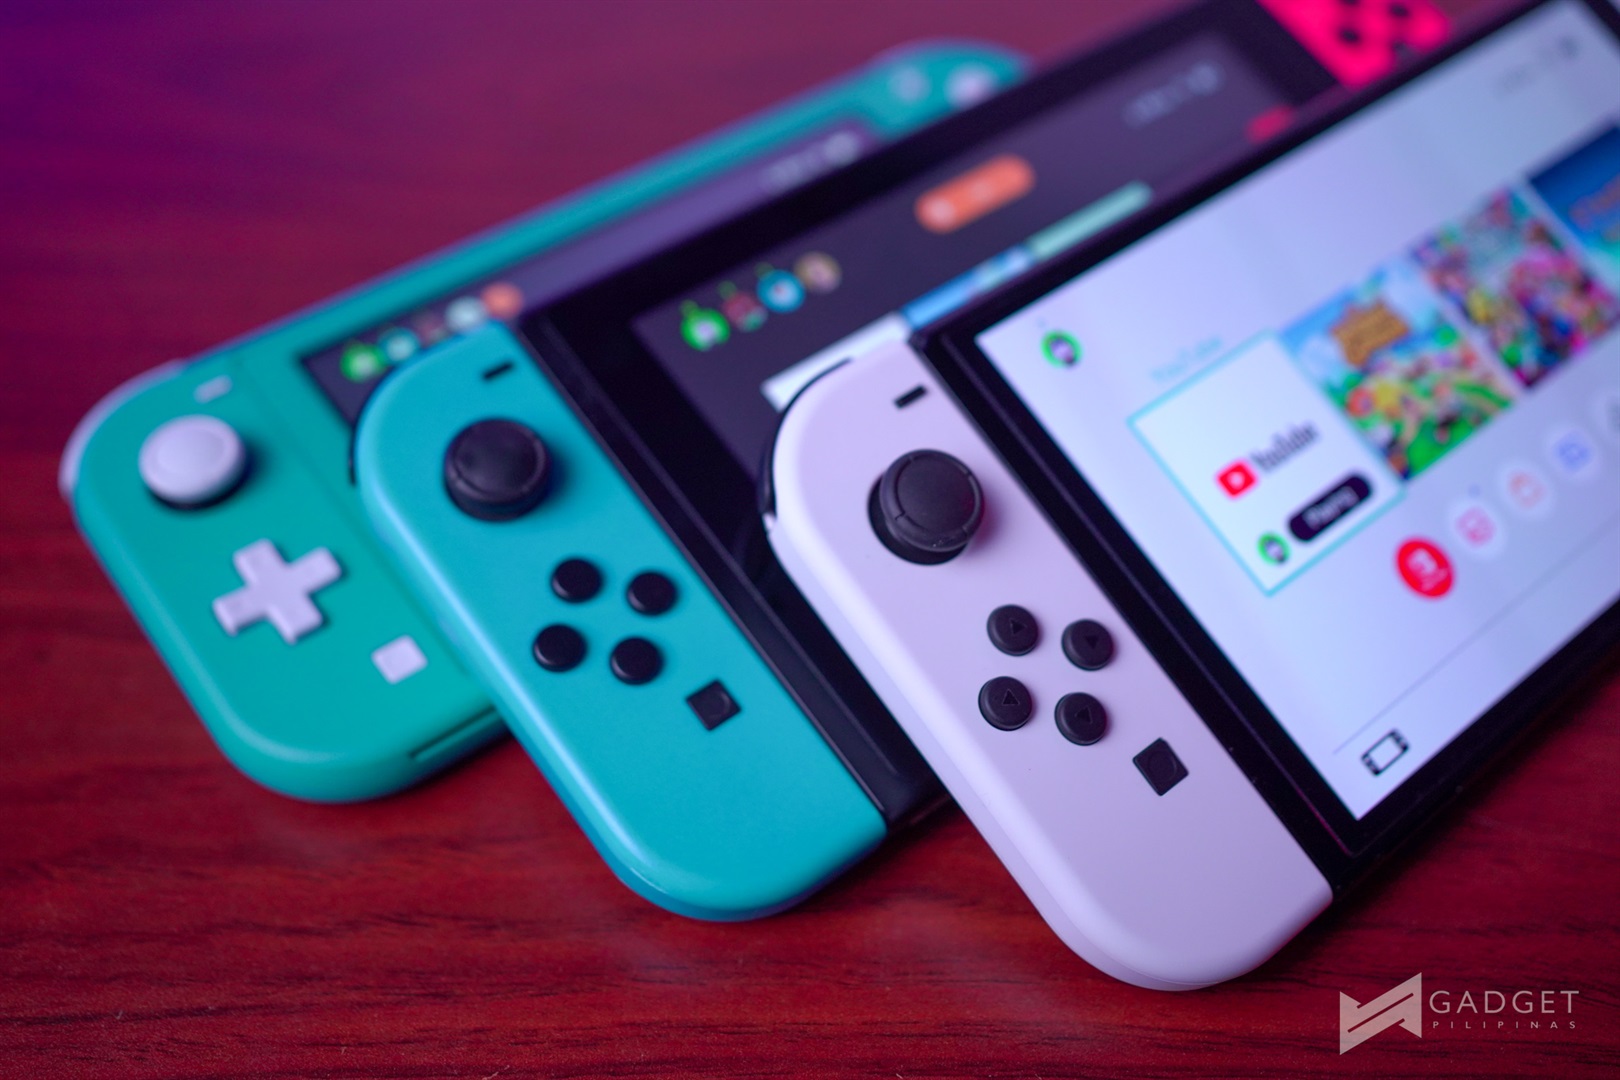 Nintendo Switch x Switch OLED x Switch Lite: todas as diferenças